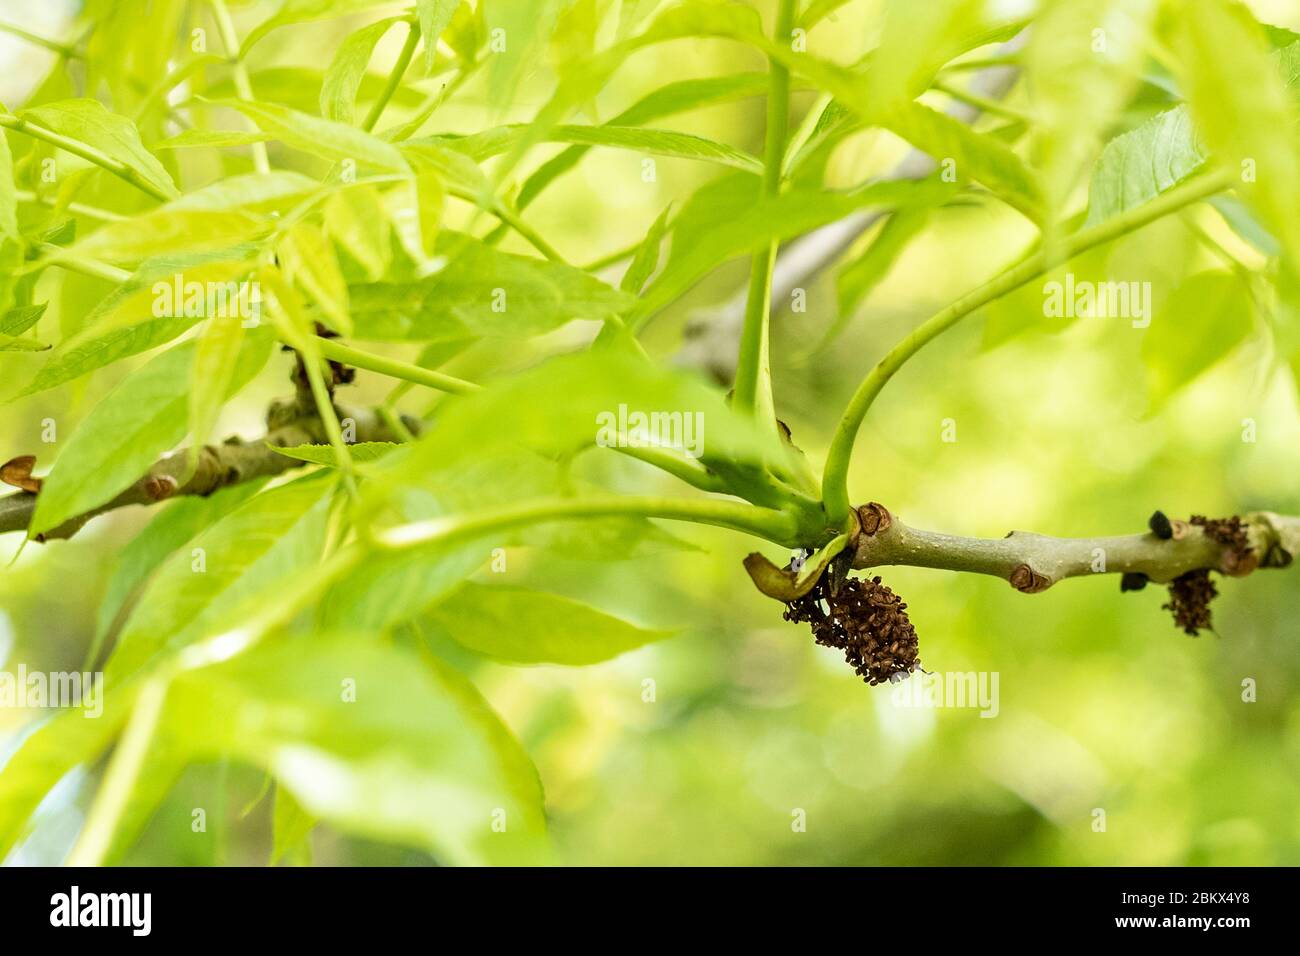 Hojas y rama de Ash común árbol - Fraxinus - mostrando galls de flores estaminadas probablemente causadas por el ácaro eriophyid que parecen no dañar la salud de Foto de stock